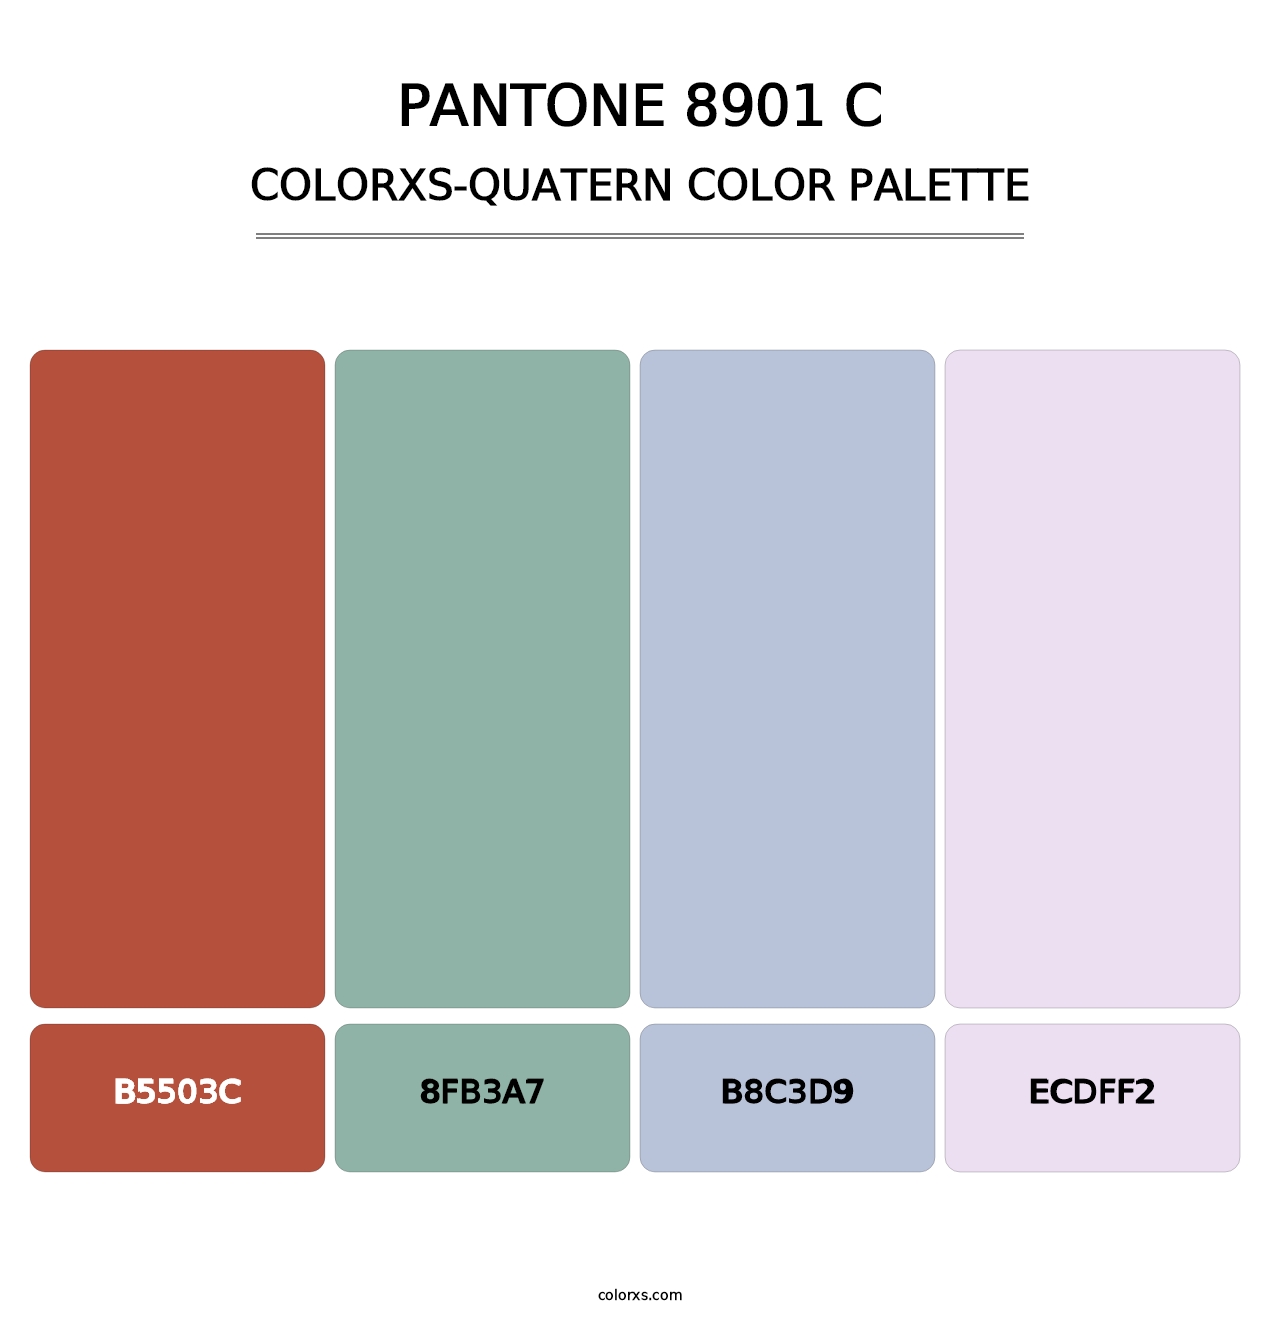 PANTONE 8901 C - Colorxs Quatern Palette